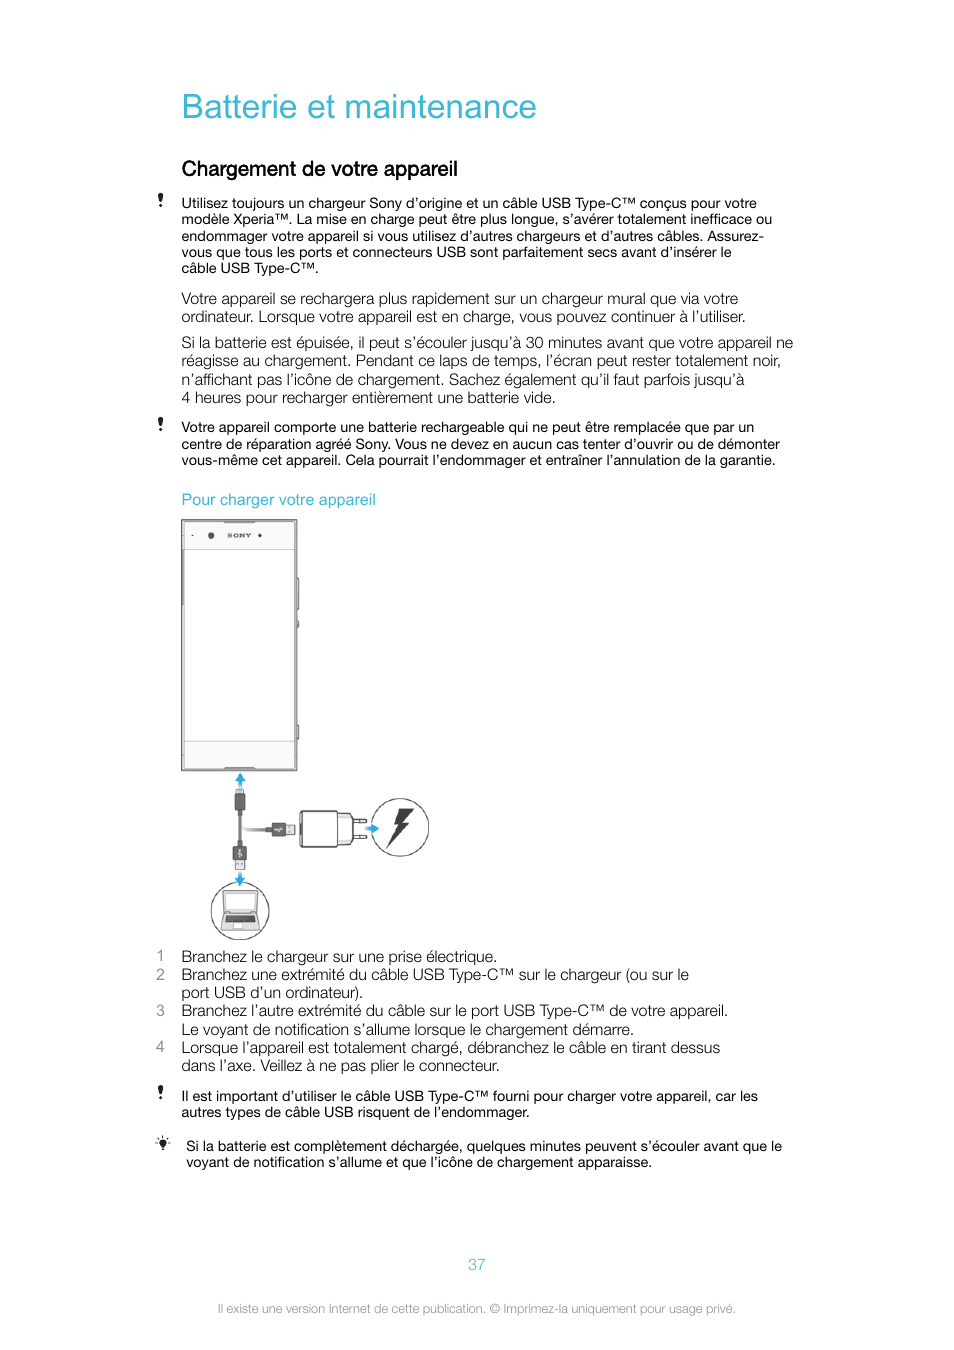 Batterie et maintenance, Chargement de votre appareil | Sony Xperia XA1 Manuel d'utilisation | Page 37 / 139